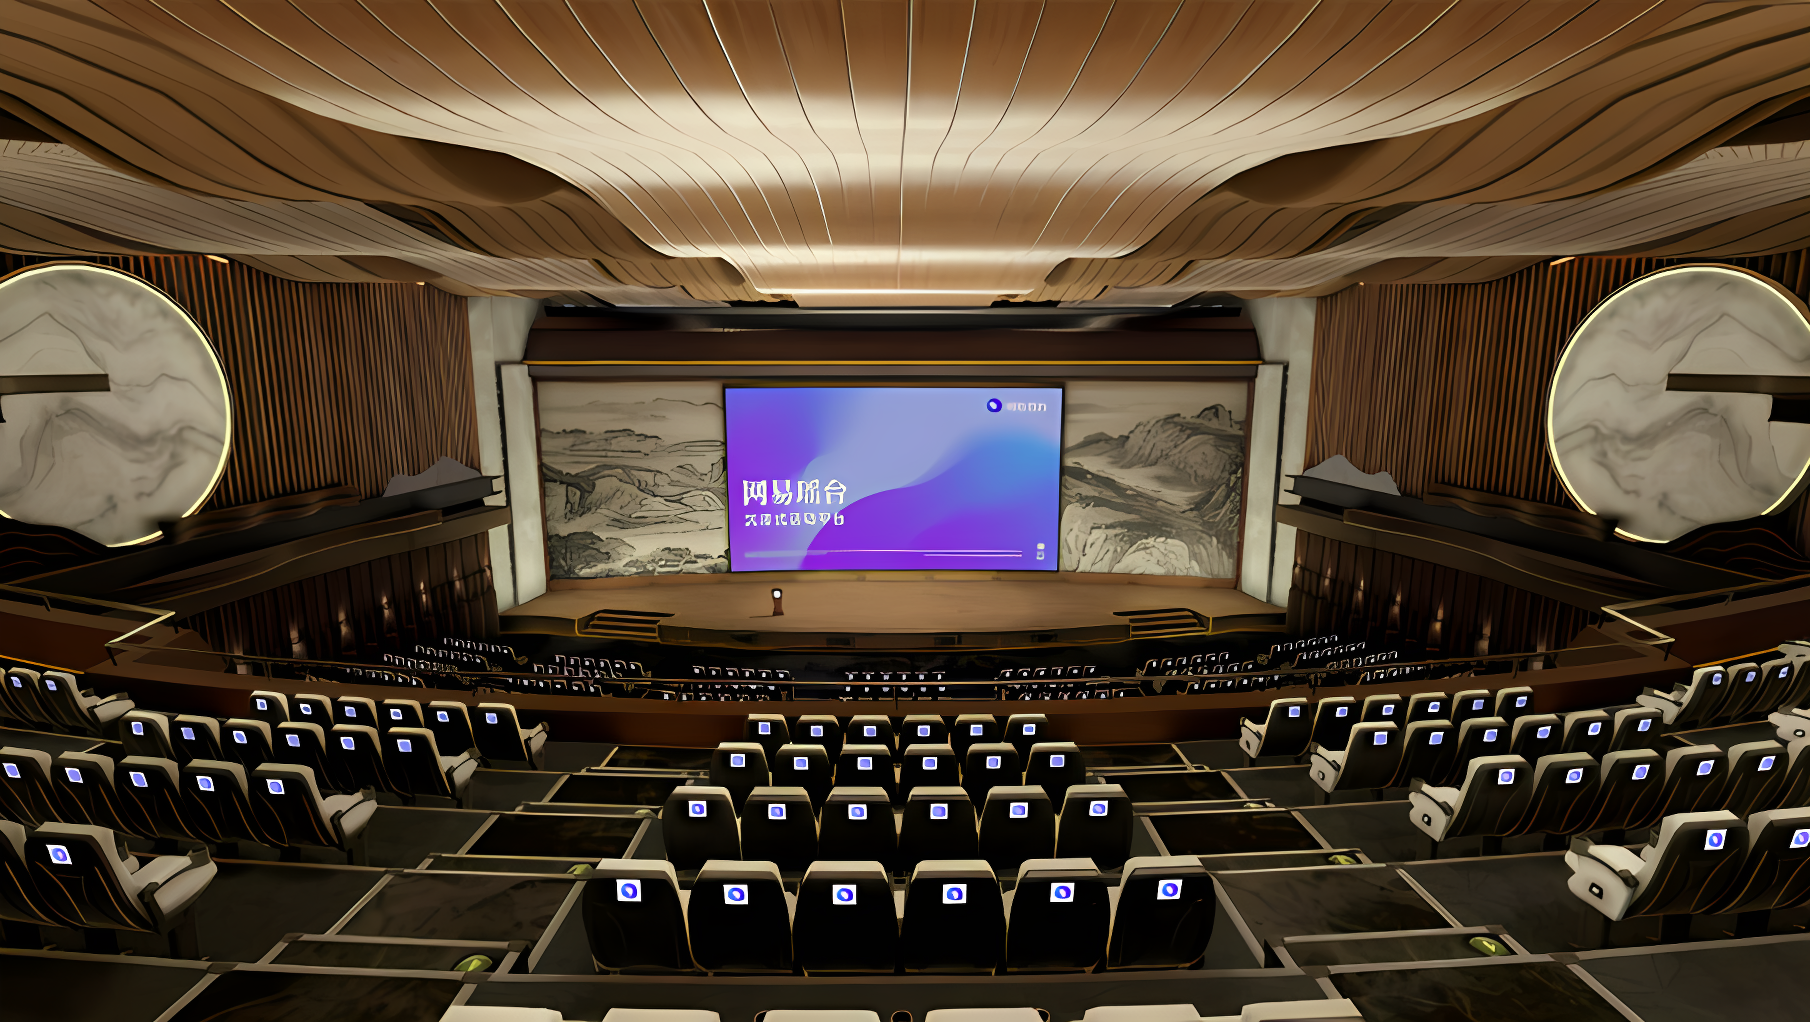 这是一张现代会议厅的图片，有排列整齐的座椅、宽阔的讲台和大屏幕，墙面装饰有艺术雕塑，显得高端大气。